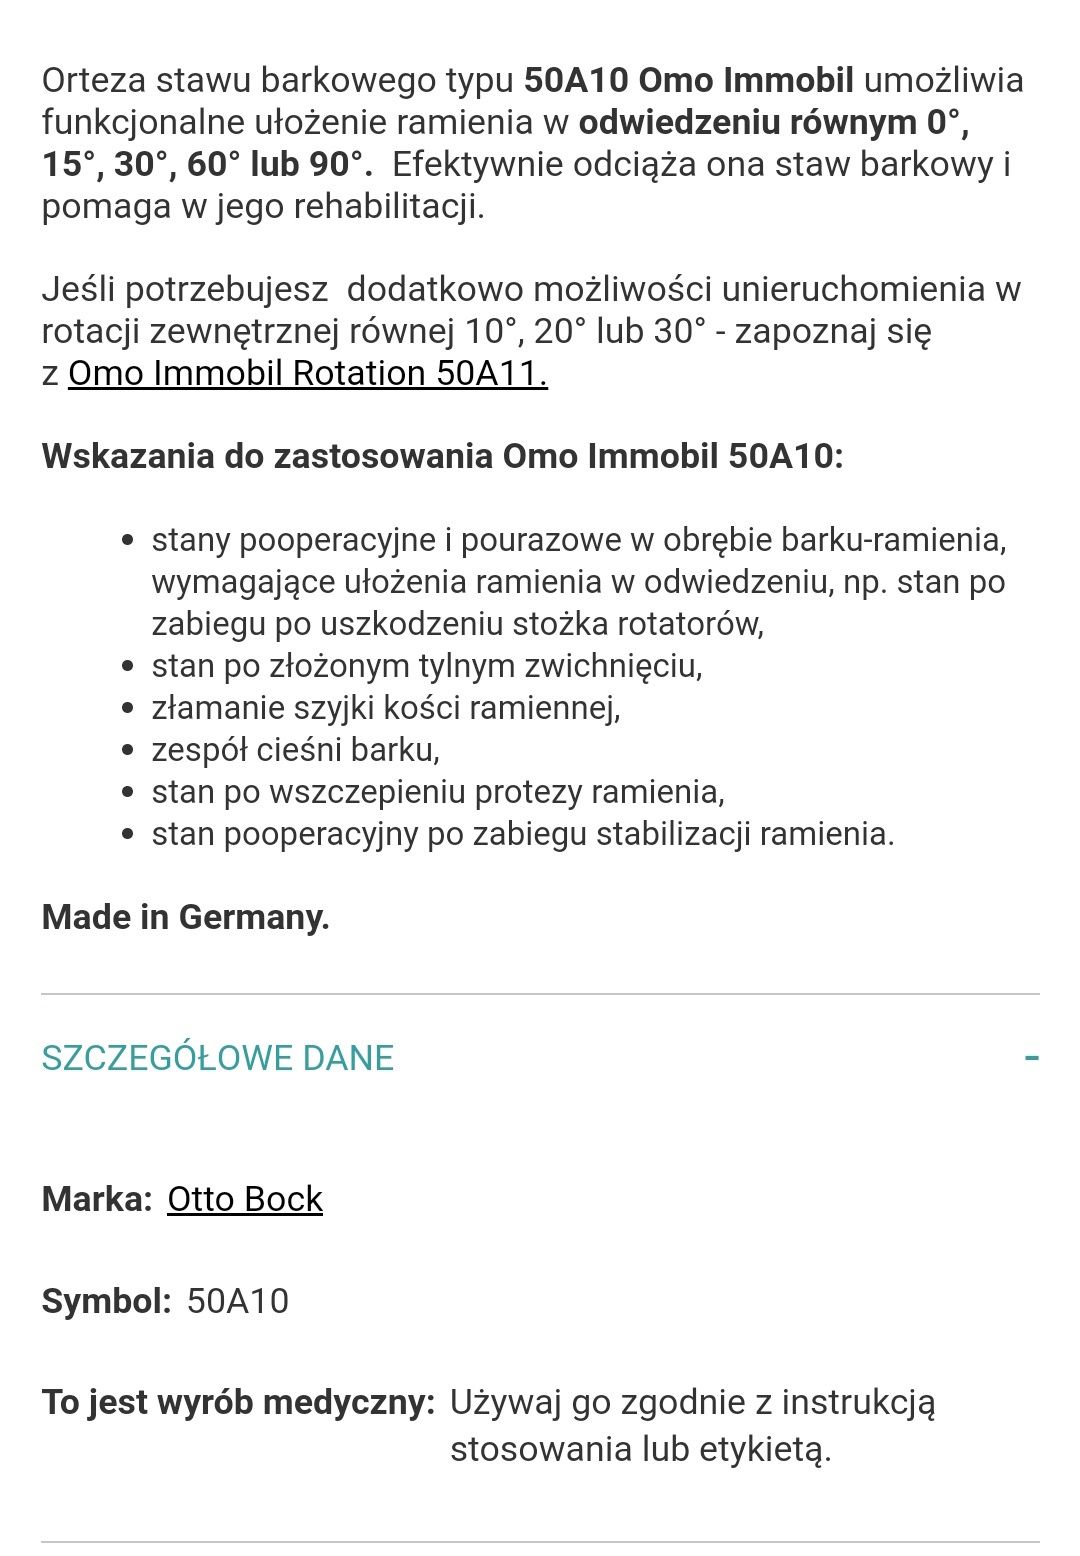 ORTEZA Aparat ortopedyczny odwodzący bark Otto Bock Omo Immobil 50A10